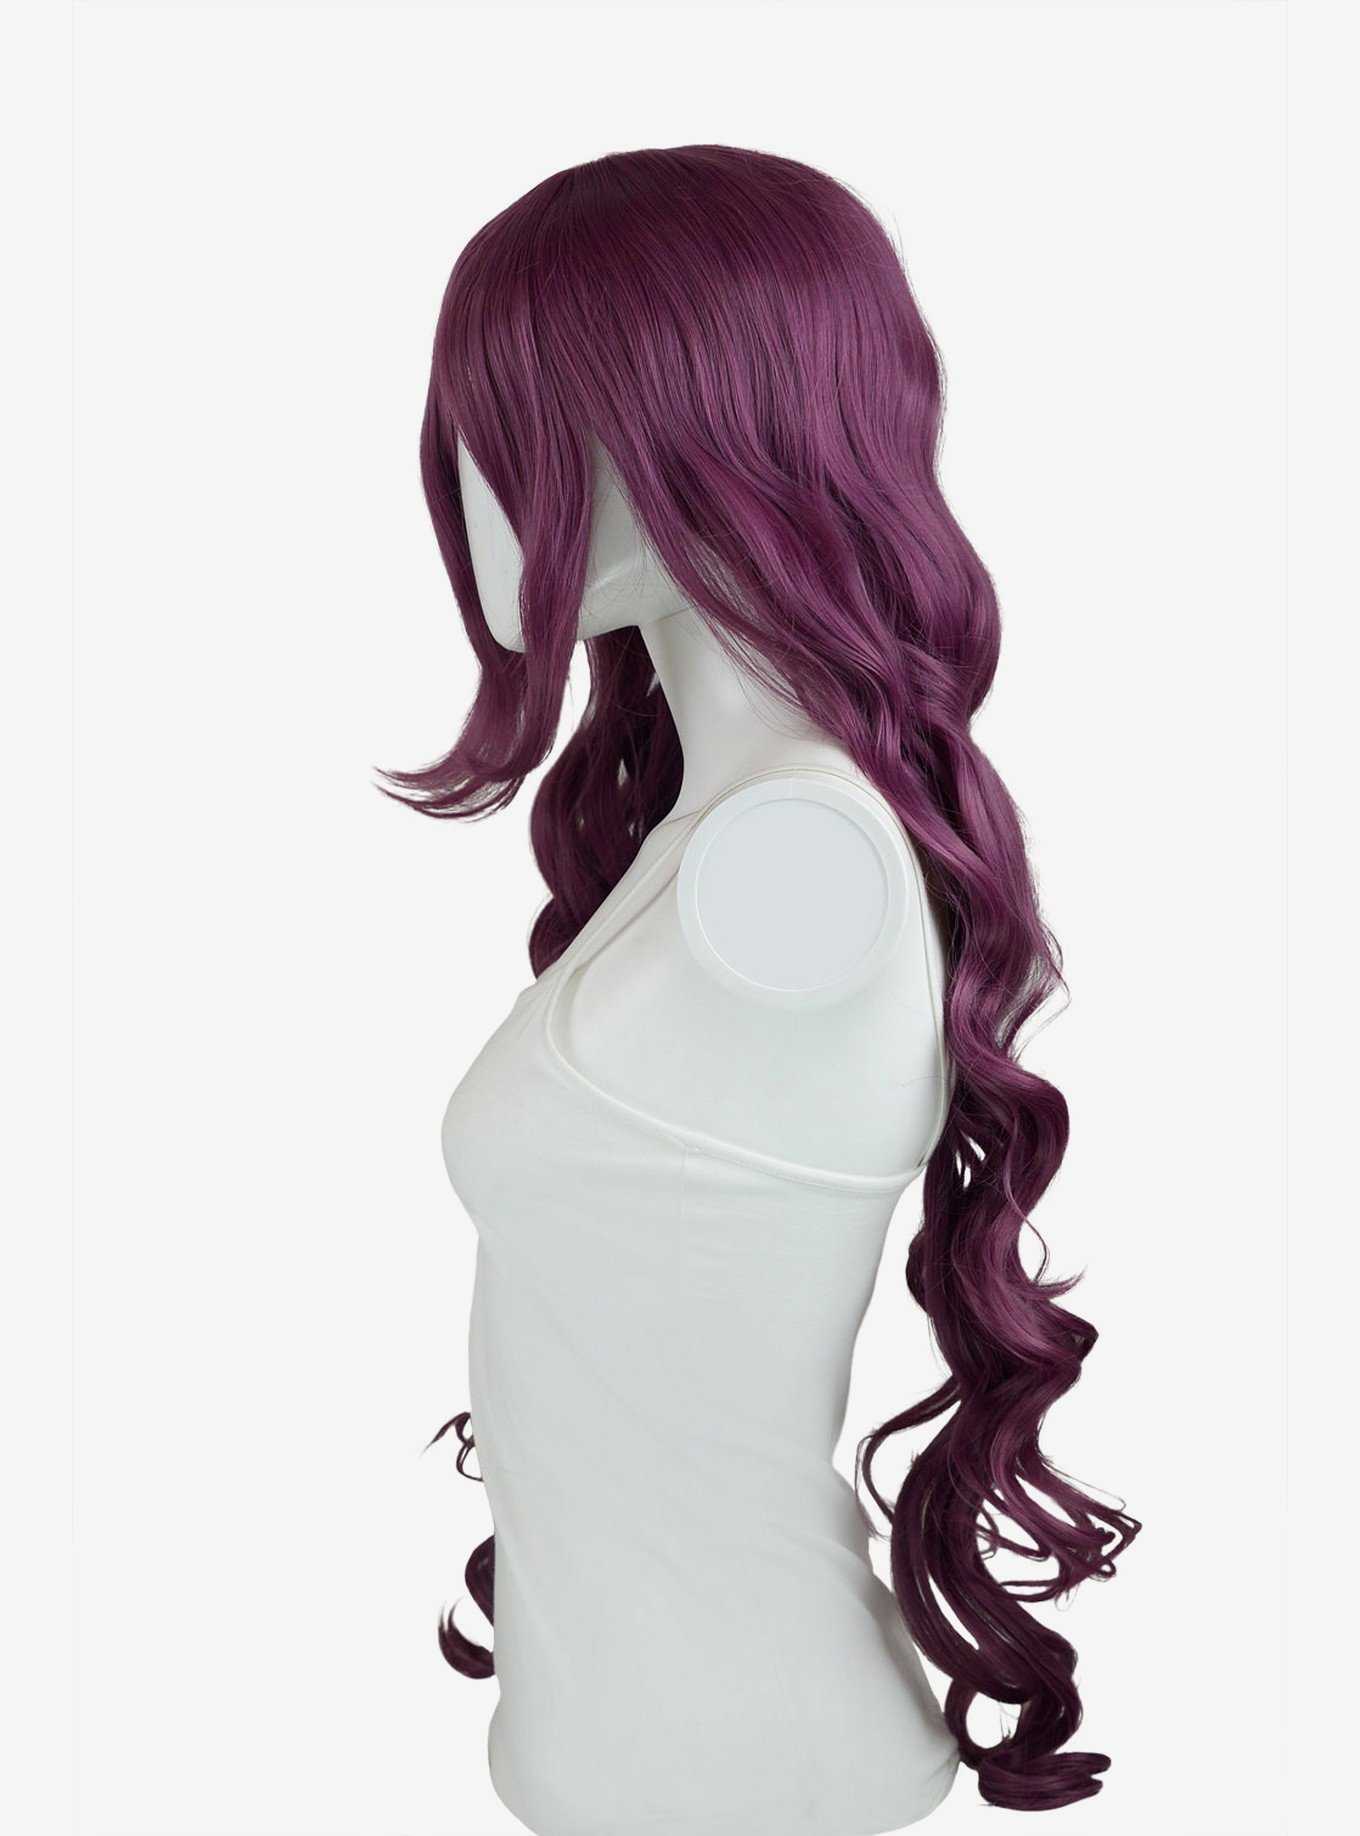 Epic Cosplay Hera Dark Plum Purple Long Curly Wig, , hi-res